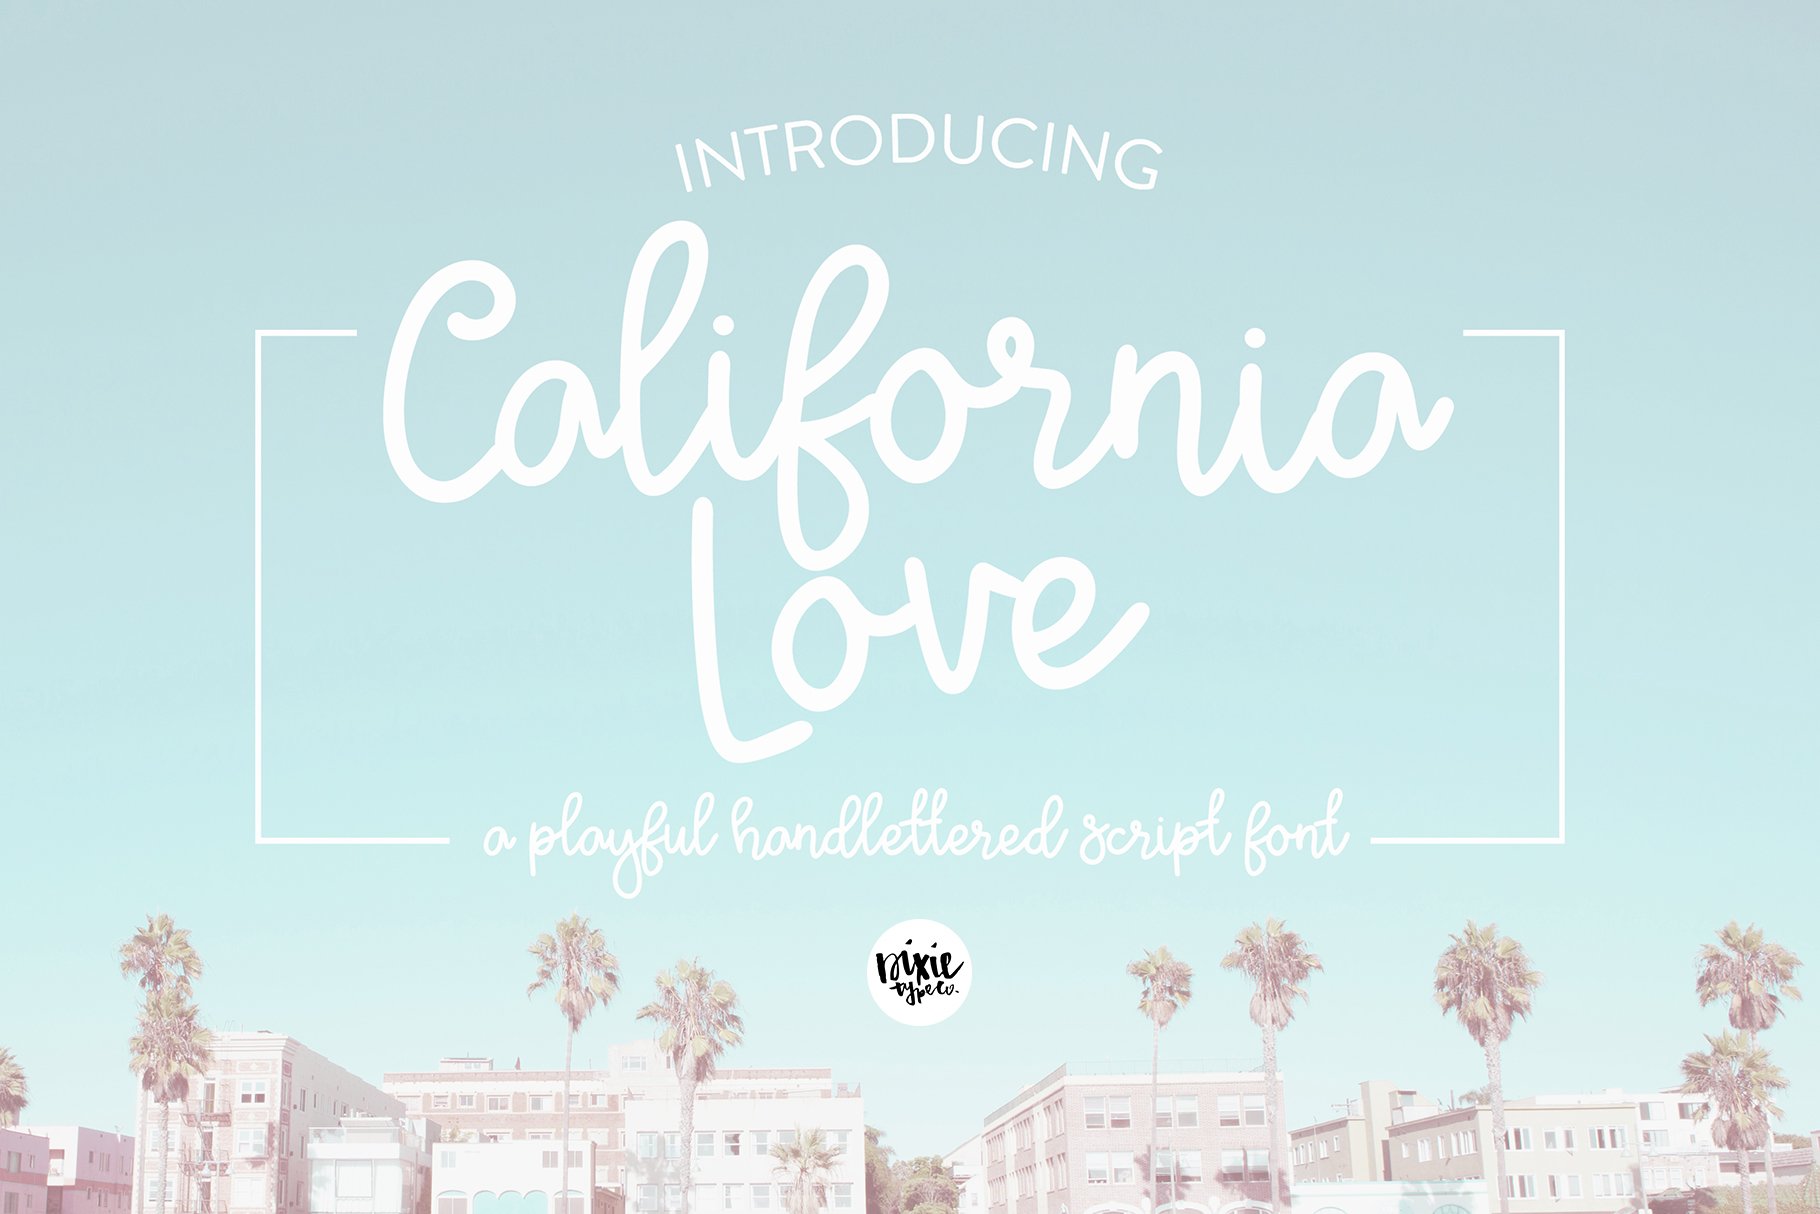 California Love Script Font cover image.